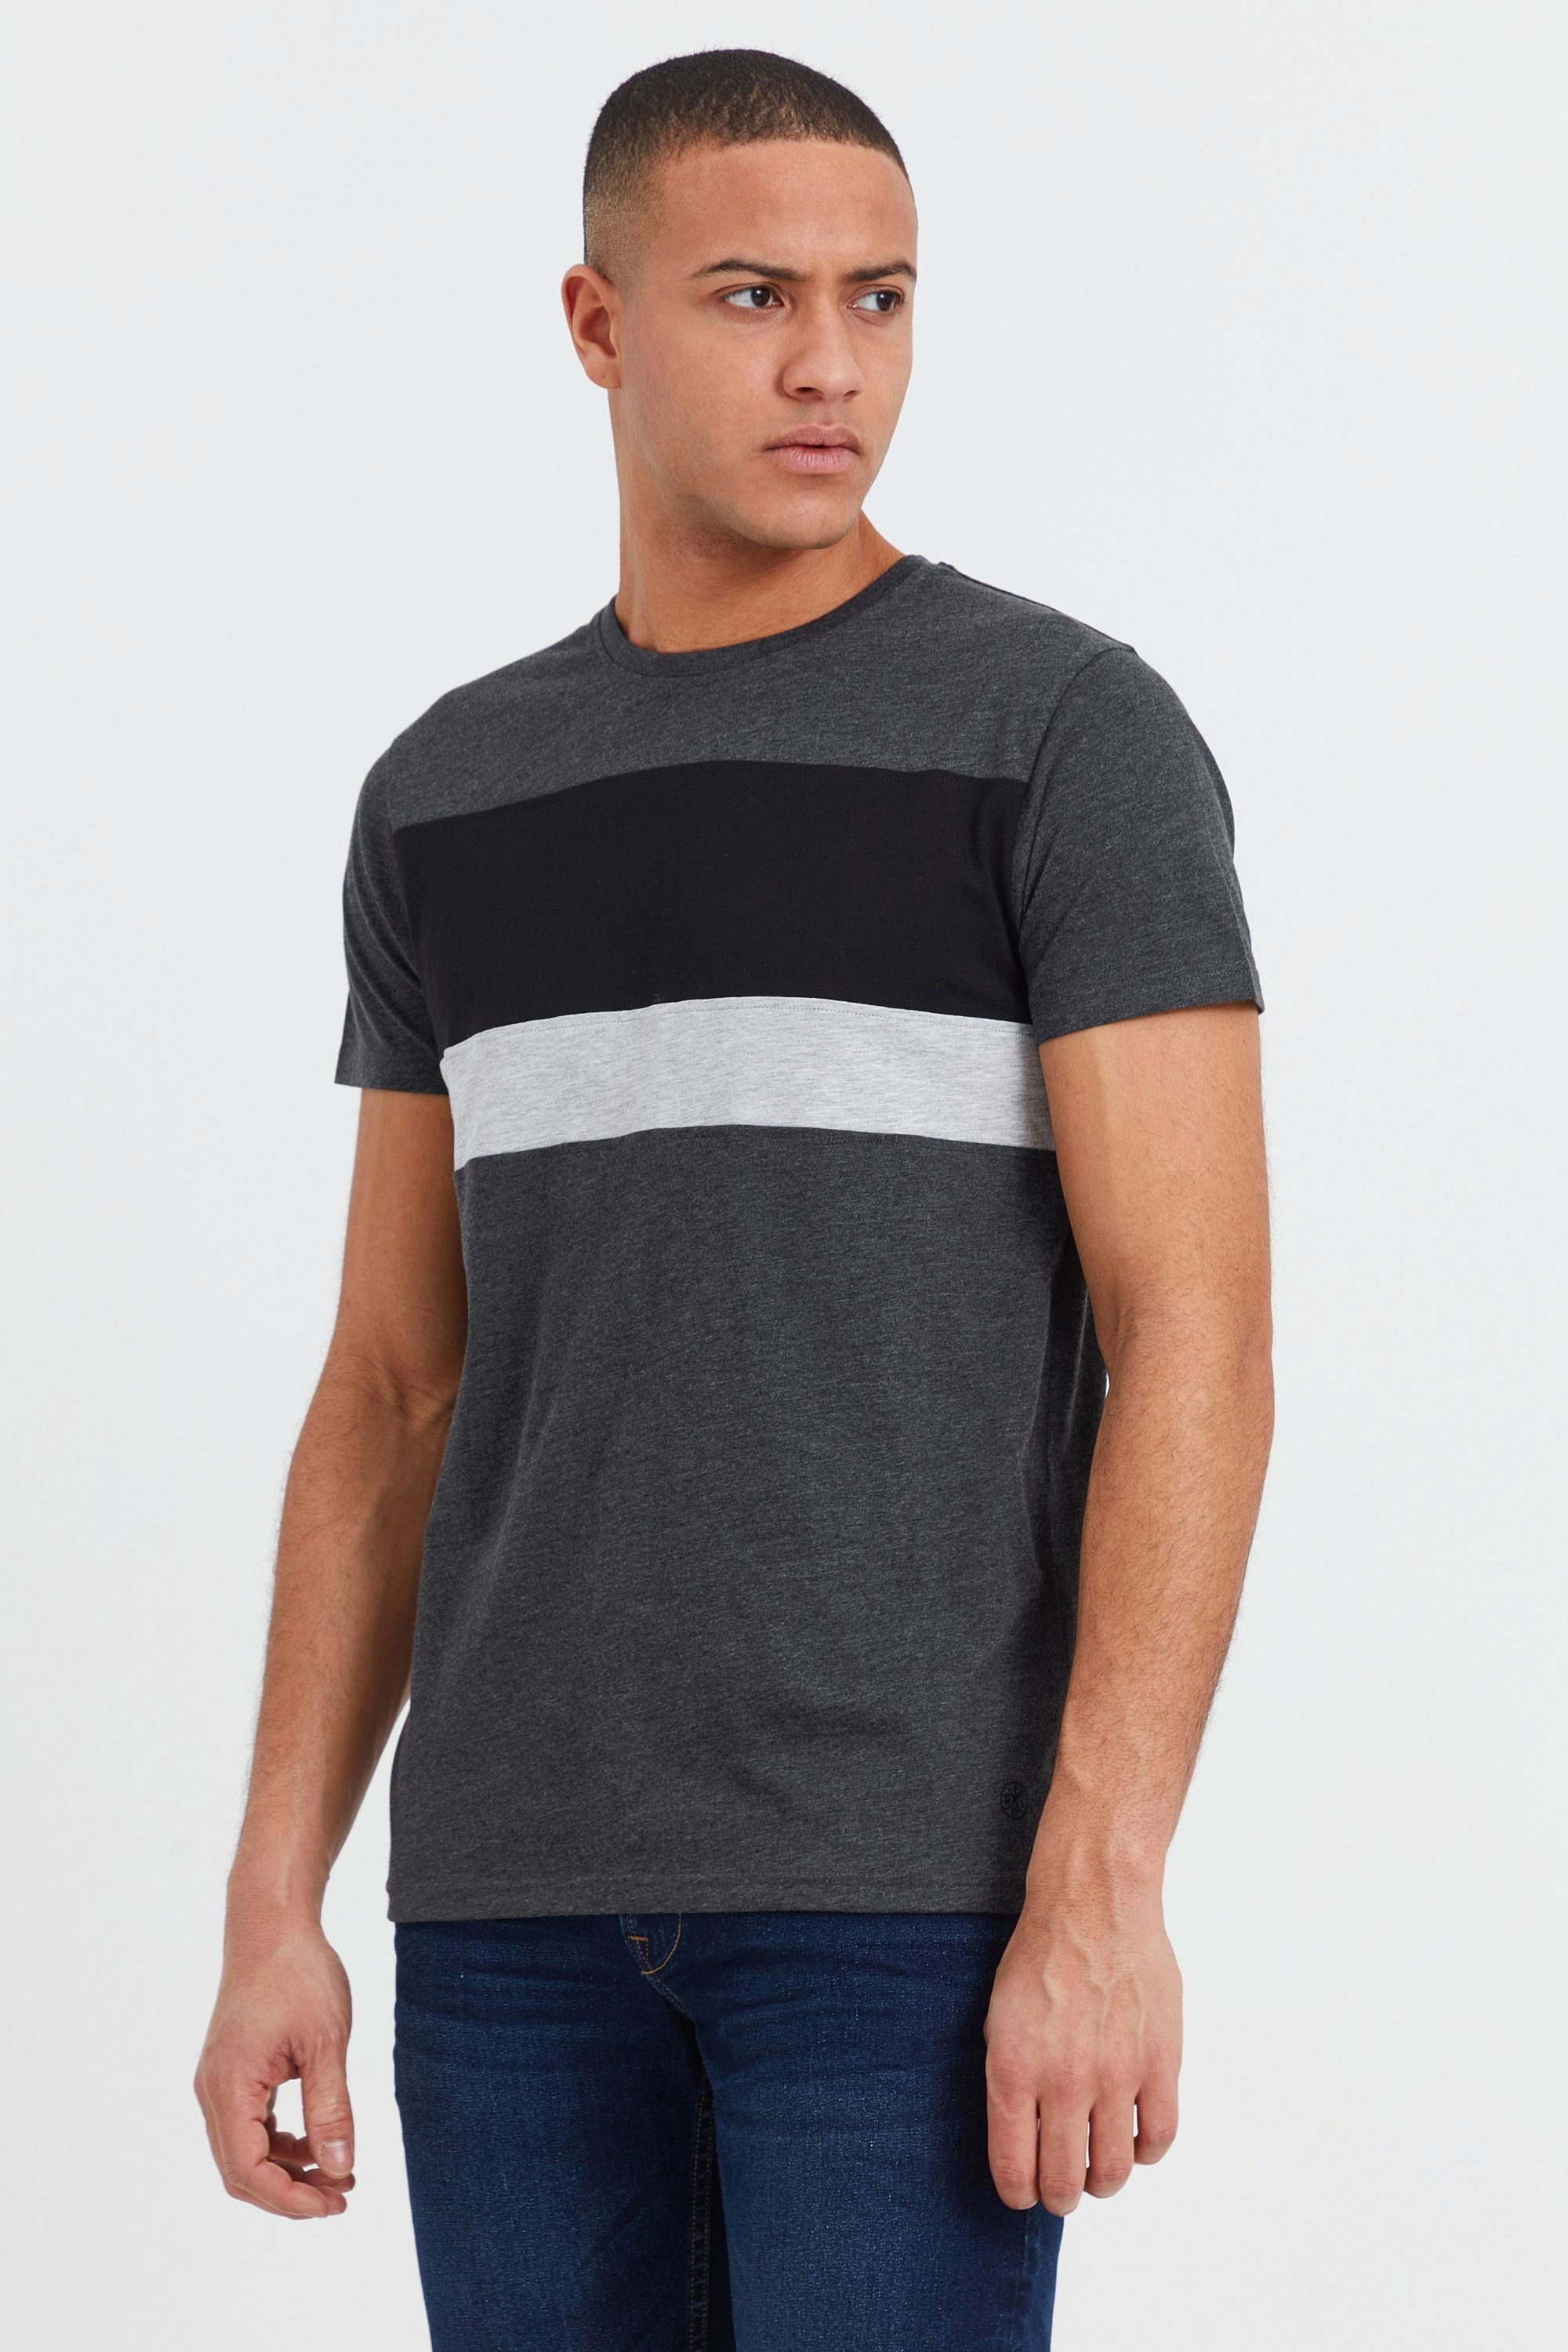 Solid Rundhalsshirt Dark T-Shirt in Melange (8288) Grey Tricolor Streifenoptik SDSascha